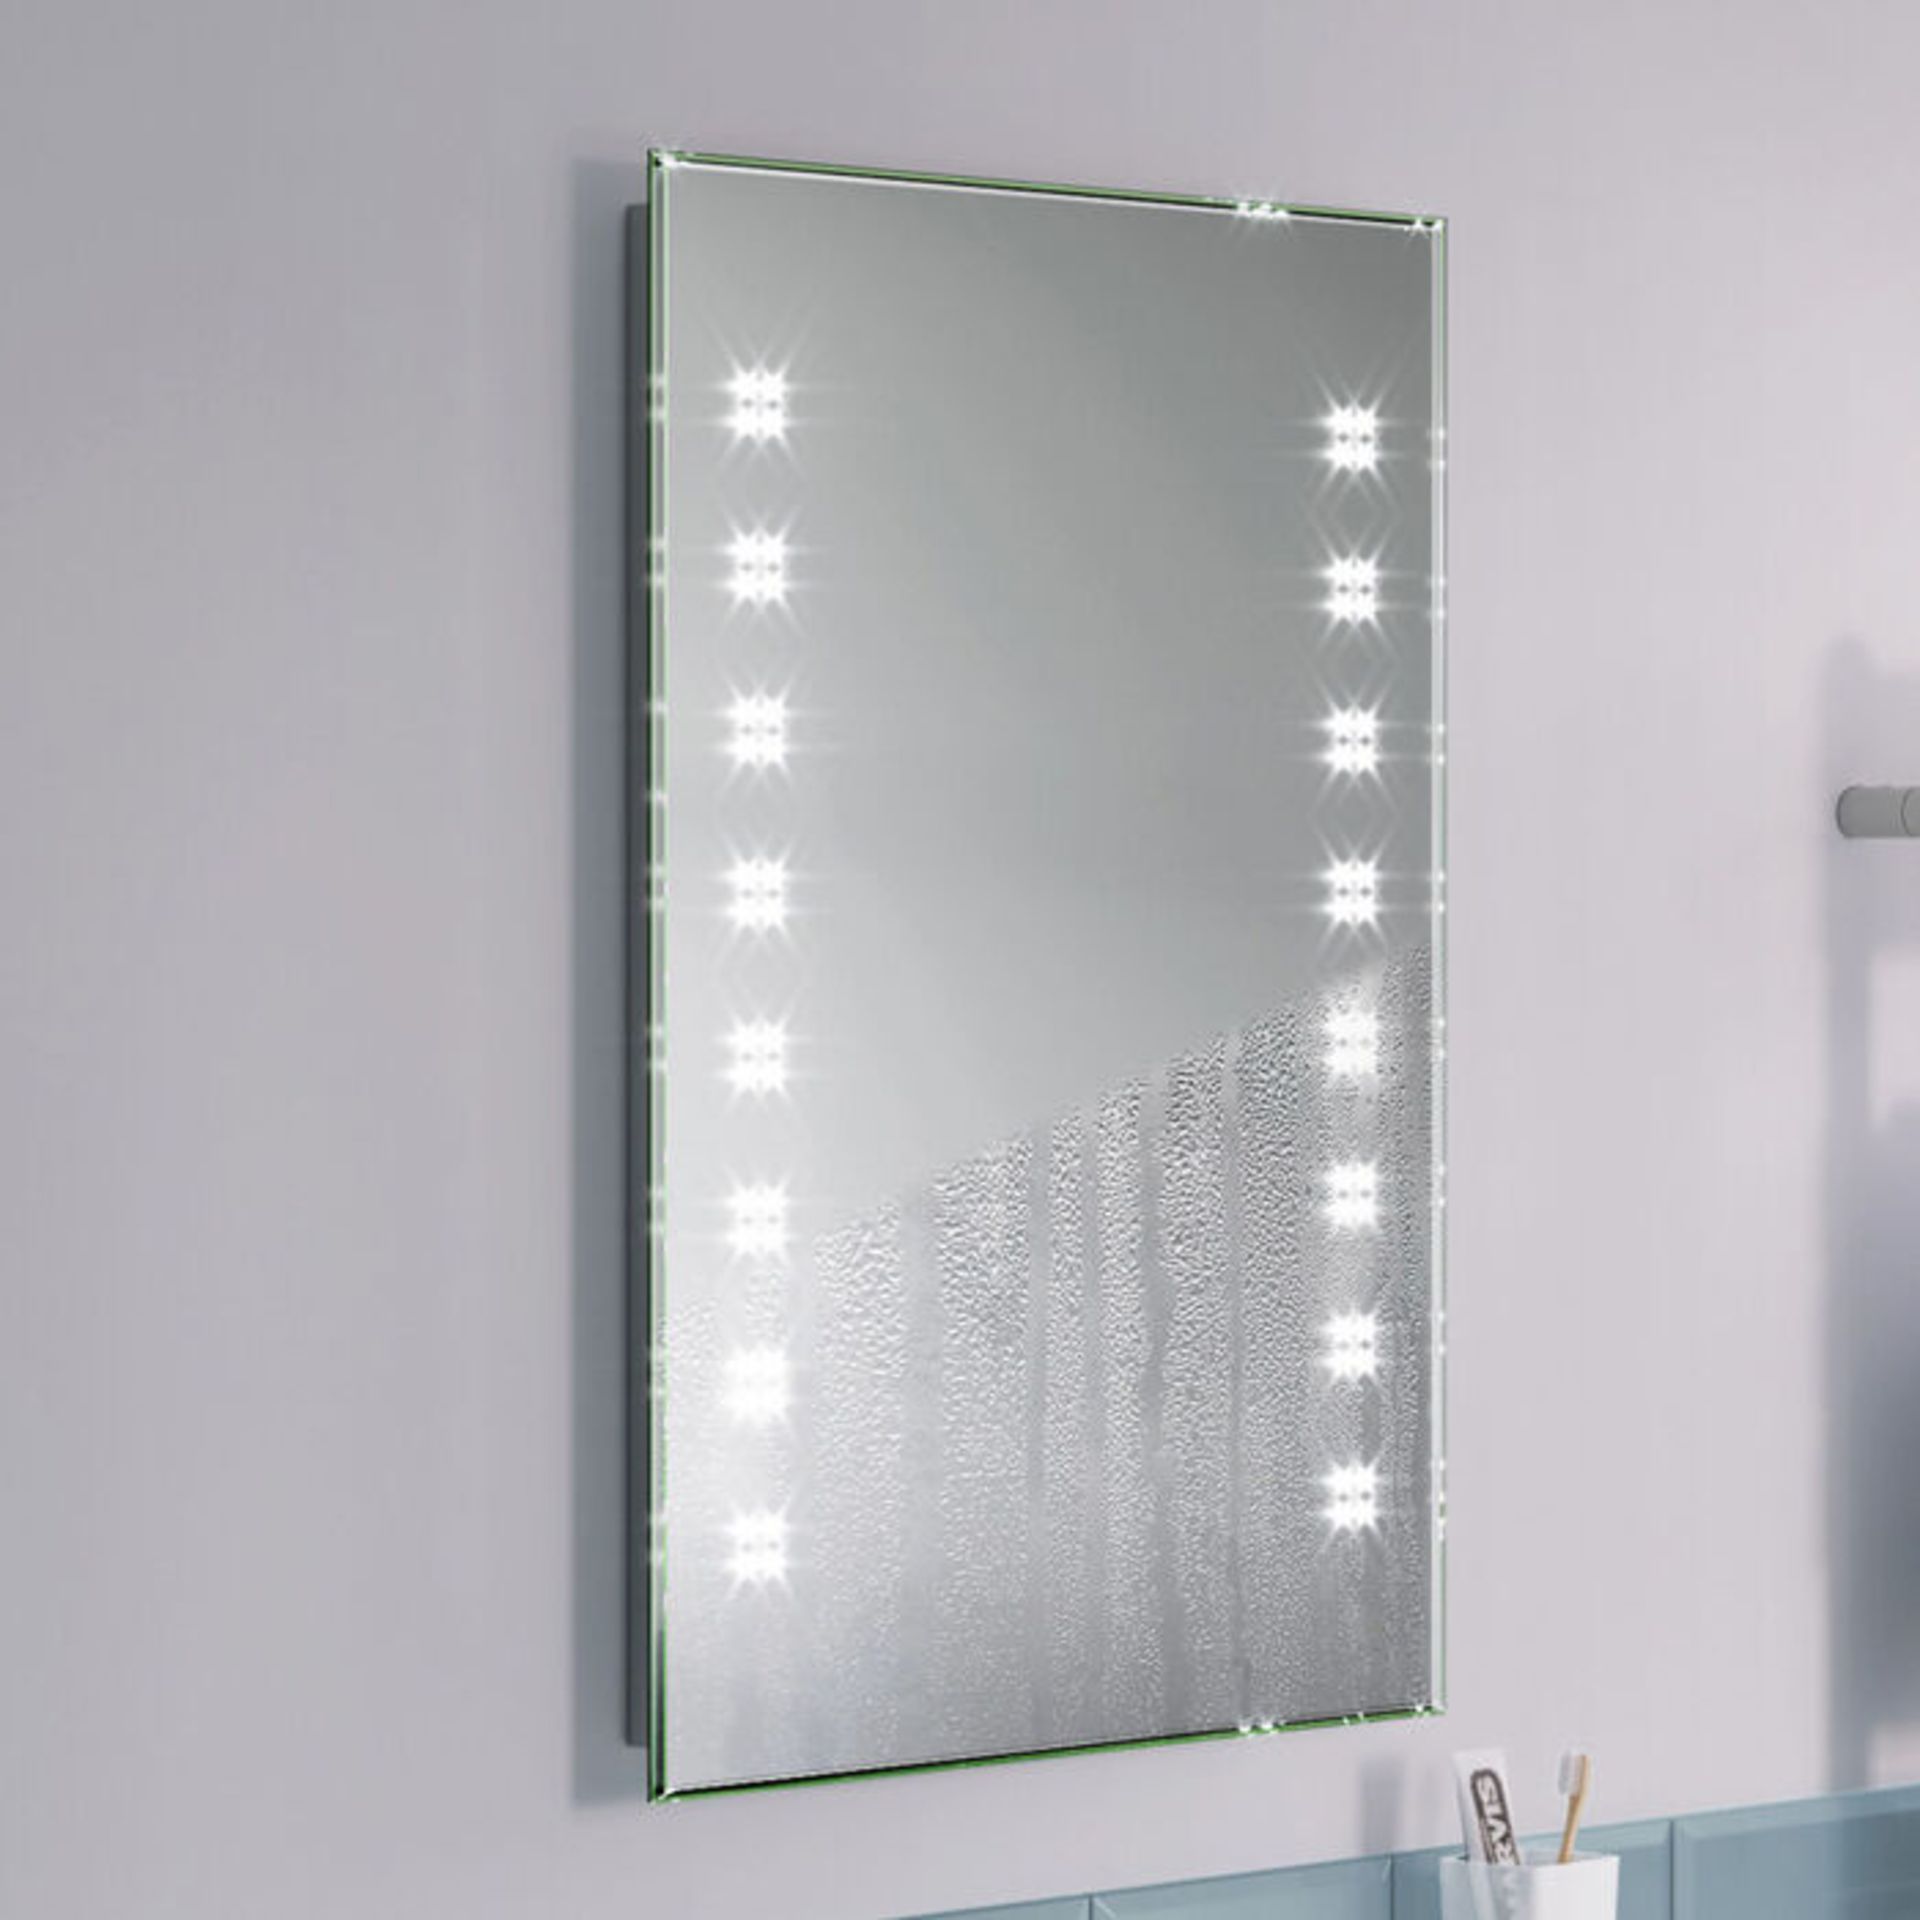 NEW 500x700mm Galactic Designer Illuminated LED Mirror.RRP £399.99.ML2101.Energy efficient LED - Image 2 of 3